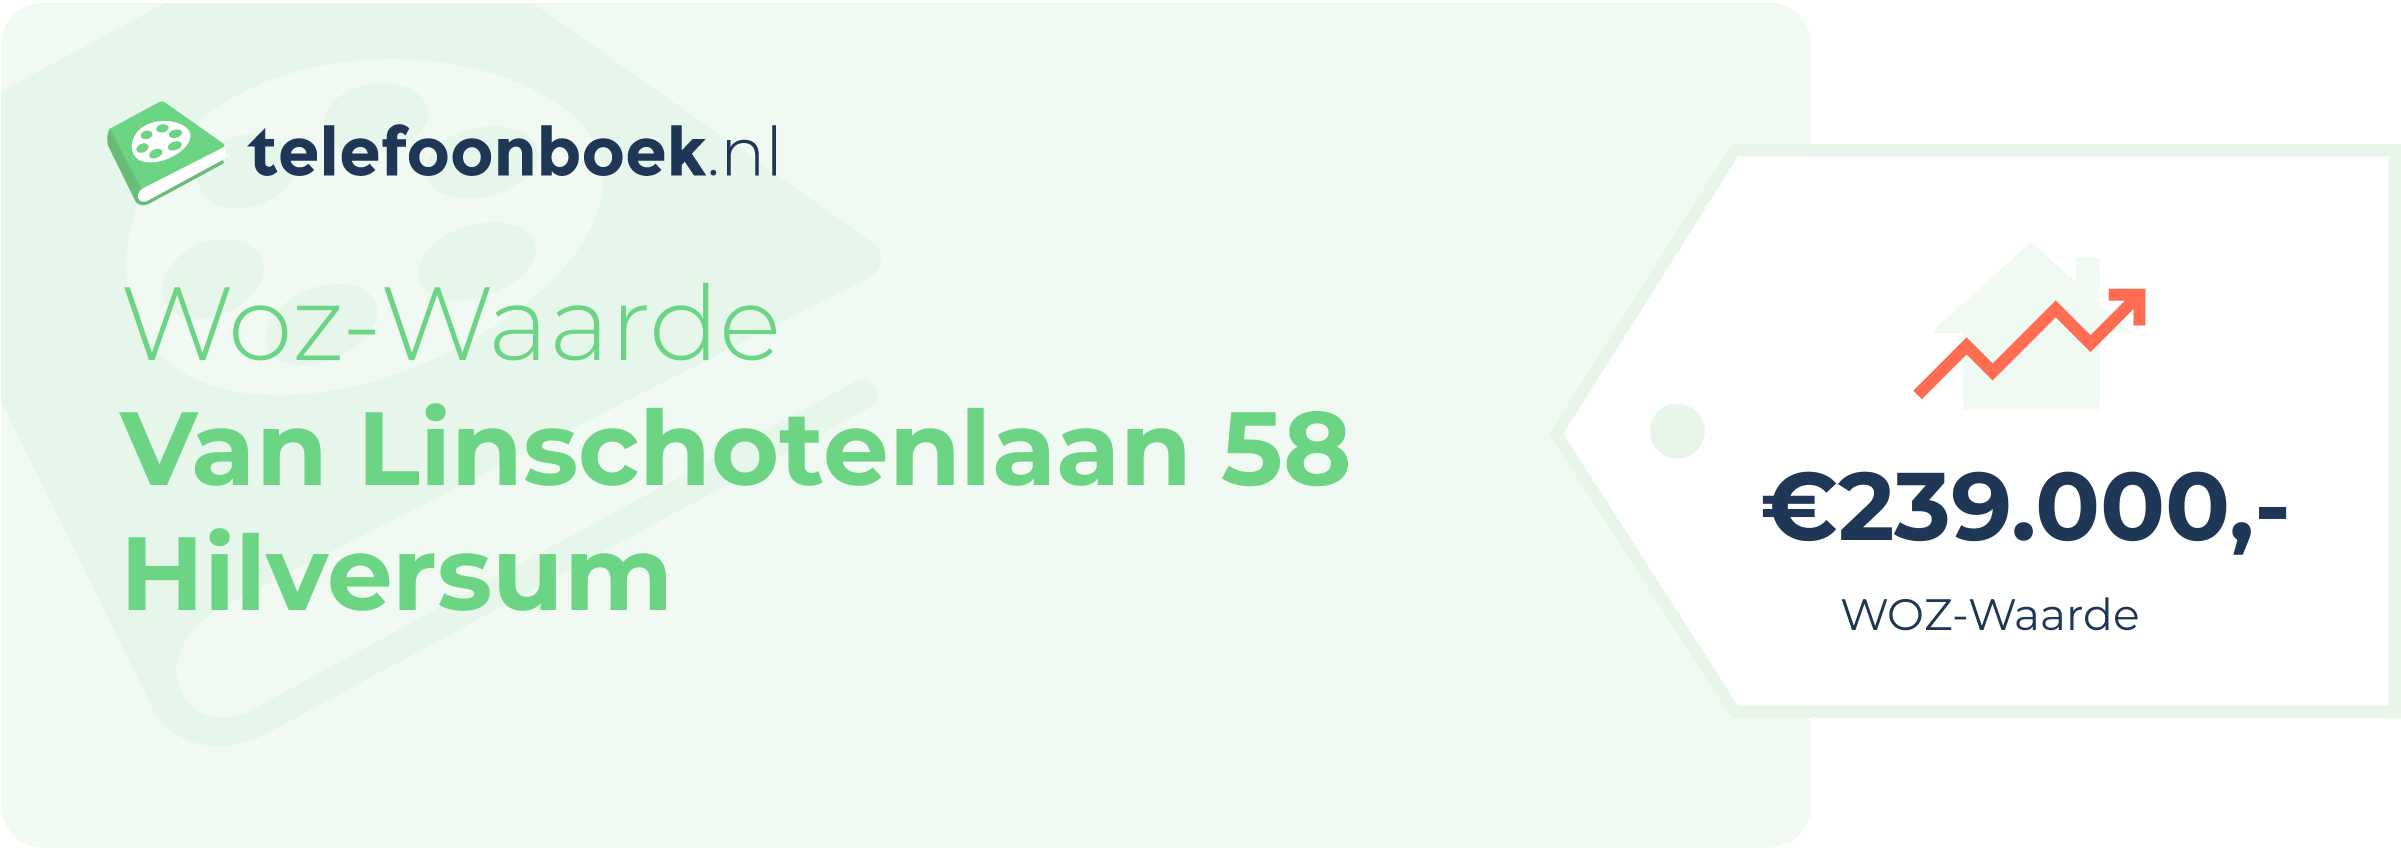 WOZ-waarde Van Linschotenlaan 58 Hilversum